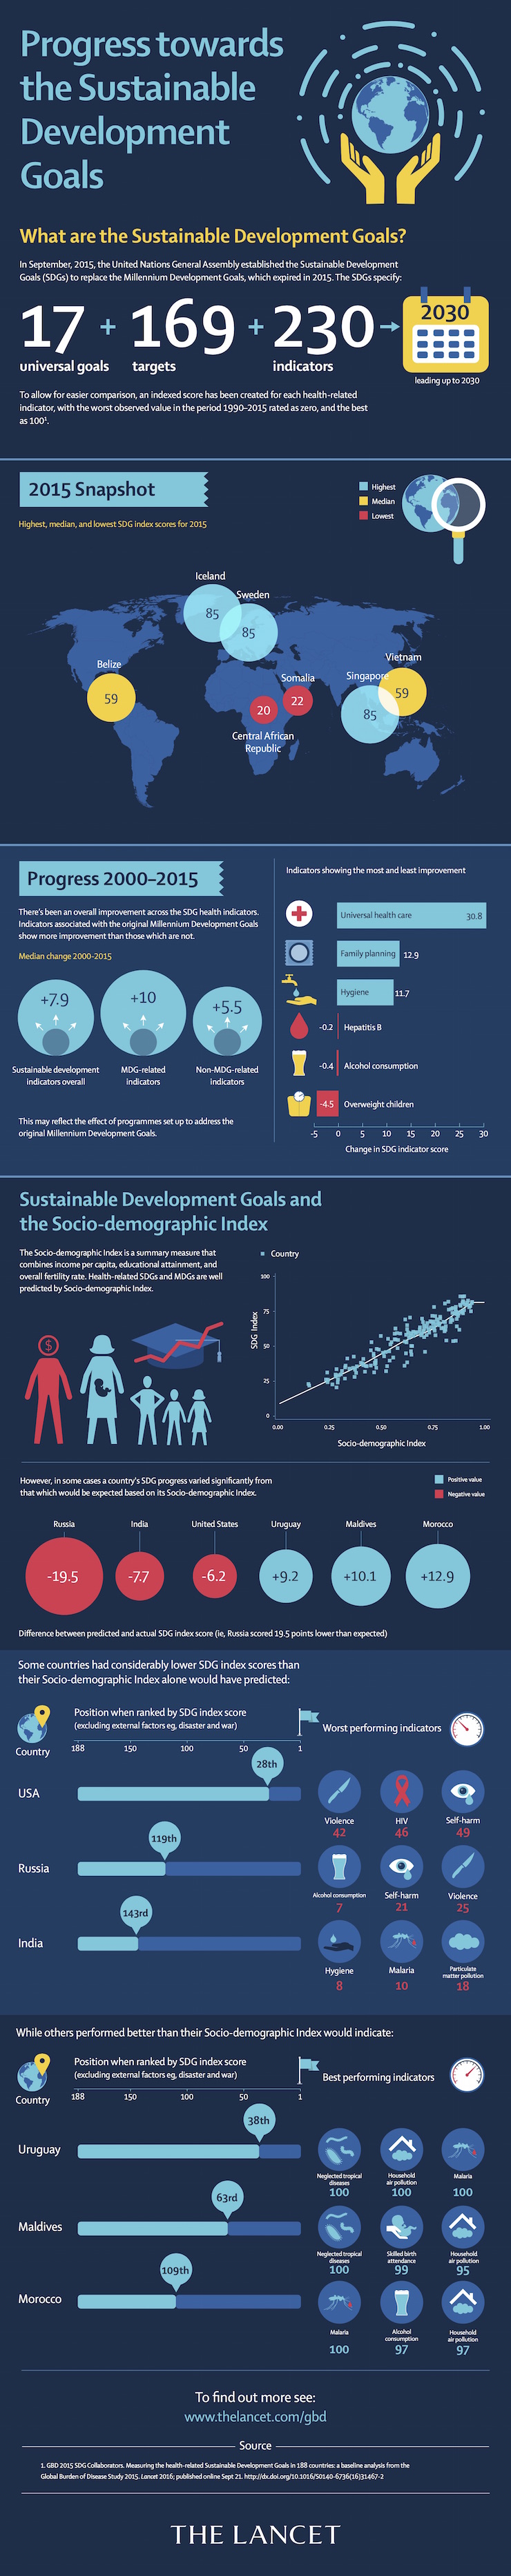 [SDG infographic]